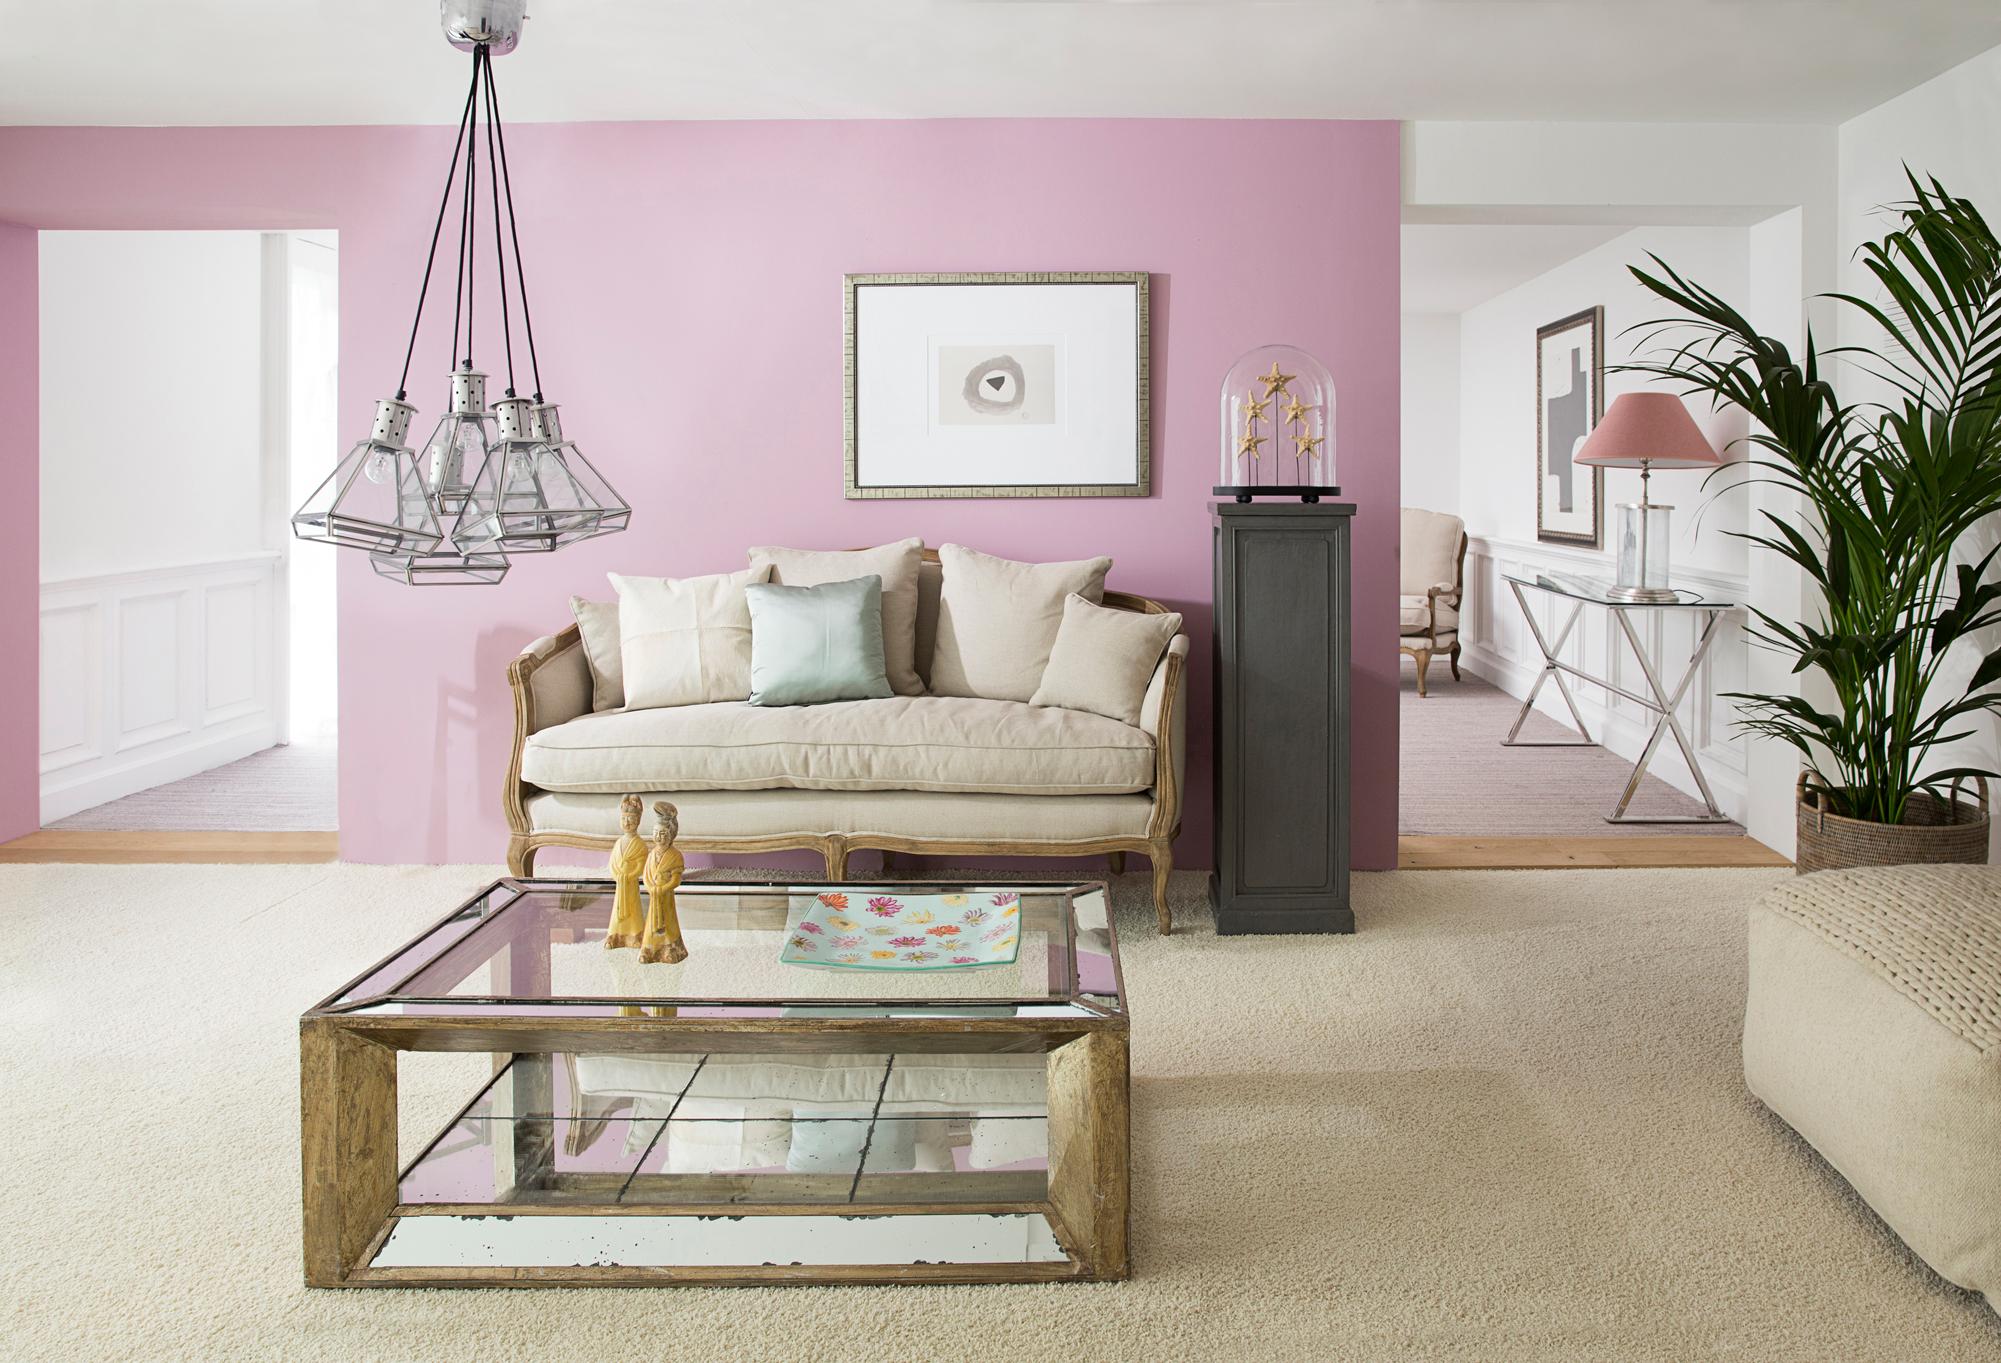 Rosa Wandfarbe bringt frische Akzente #couchtisch #wohnzimmer #pendelleuchte #sofa #glascouchtisch #zimmergestaltung ©Flamant